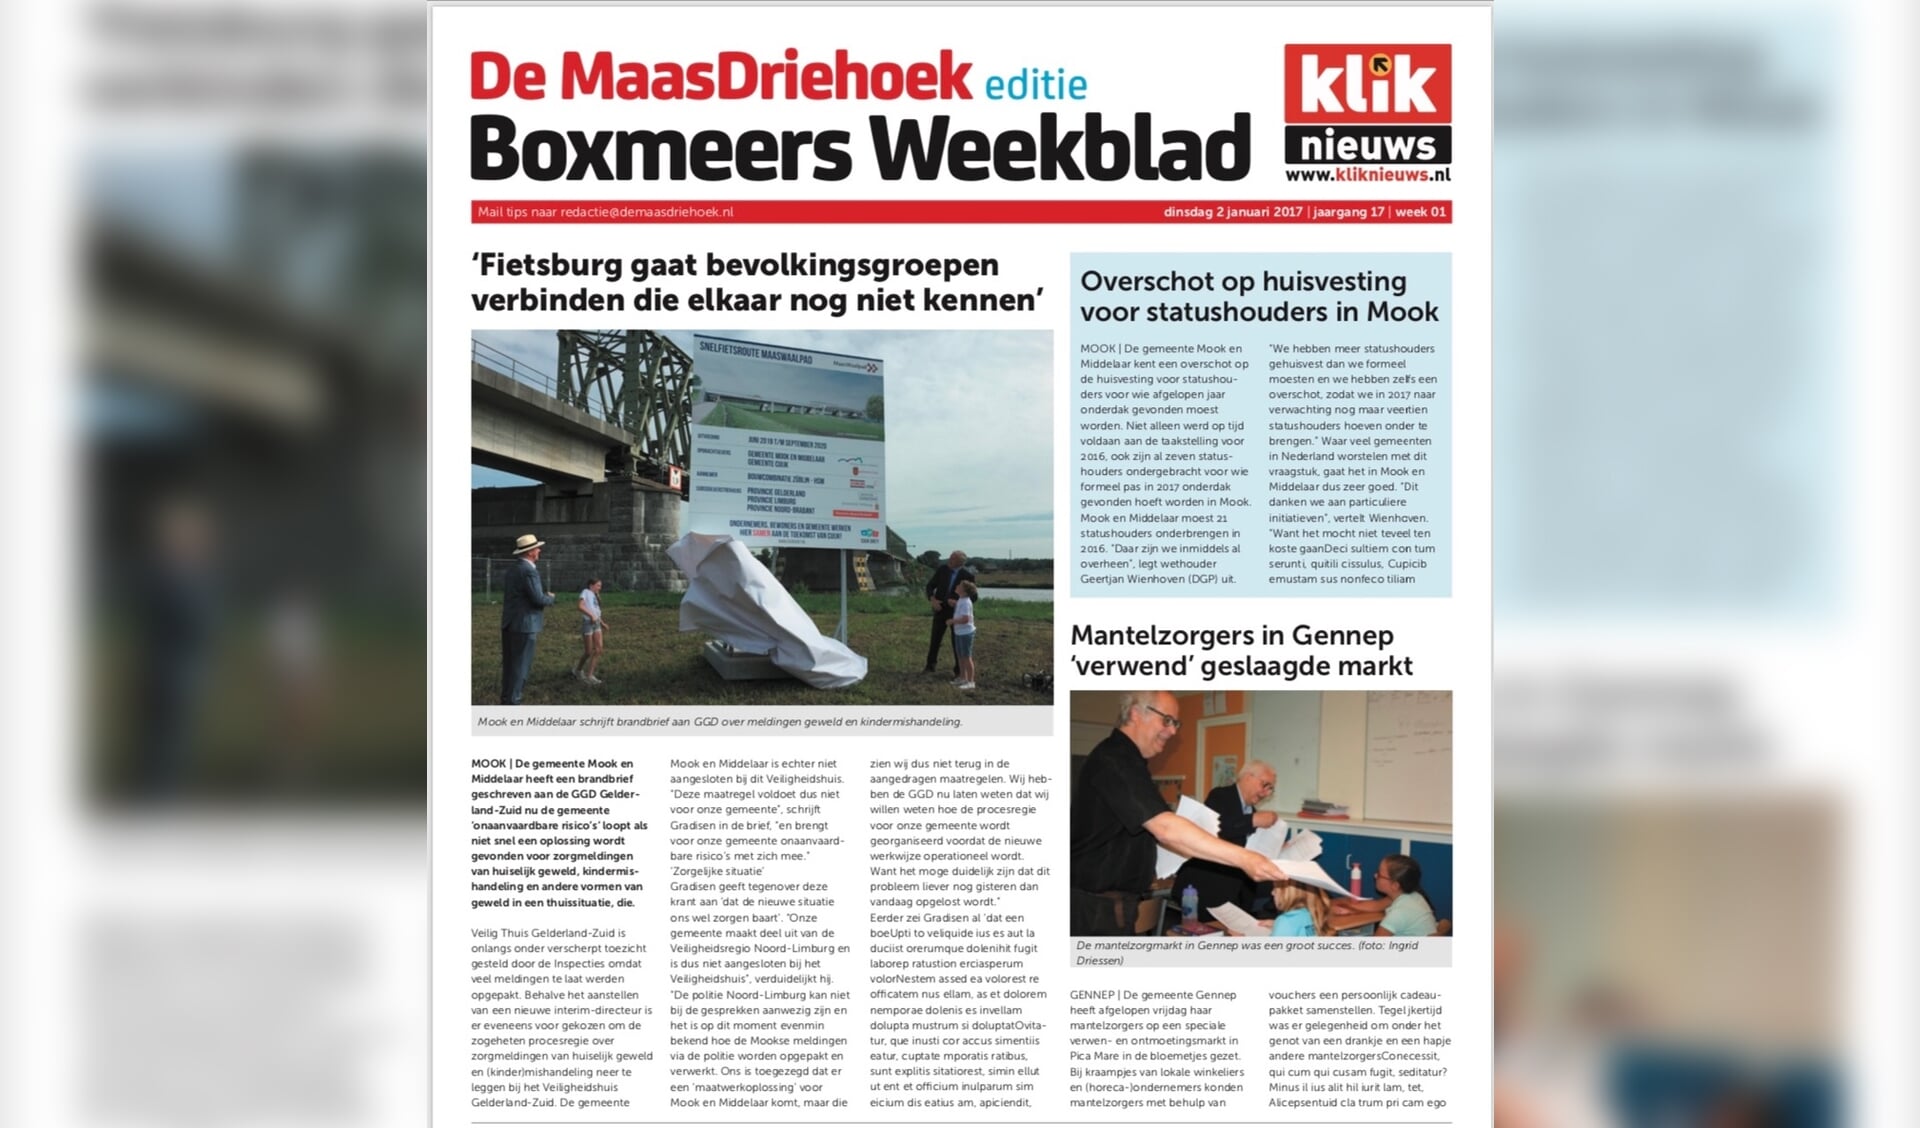 De Maas Driehoek krijgt vanaf 1 oktober twee edities: 'Cuijks Weekblad' en 'Boxmeers Weekblad'. De naam De Maas Driehoek blijft gewoon behouden.